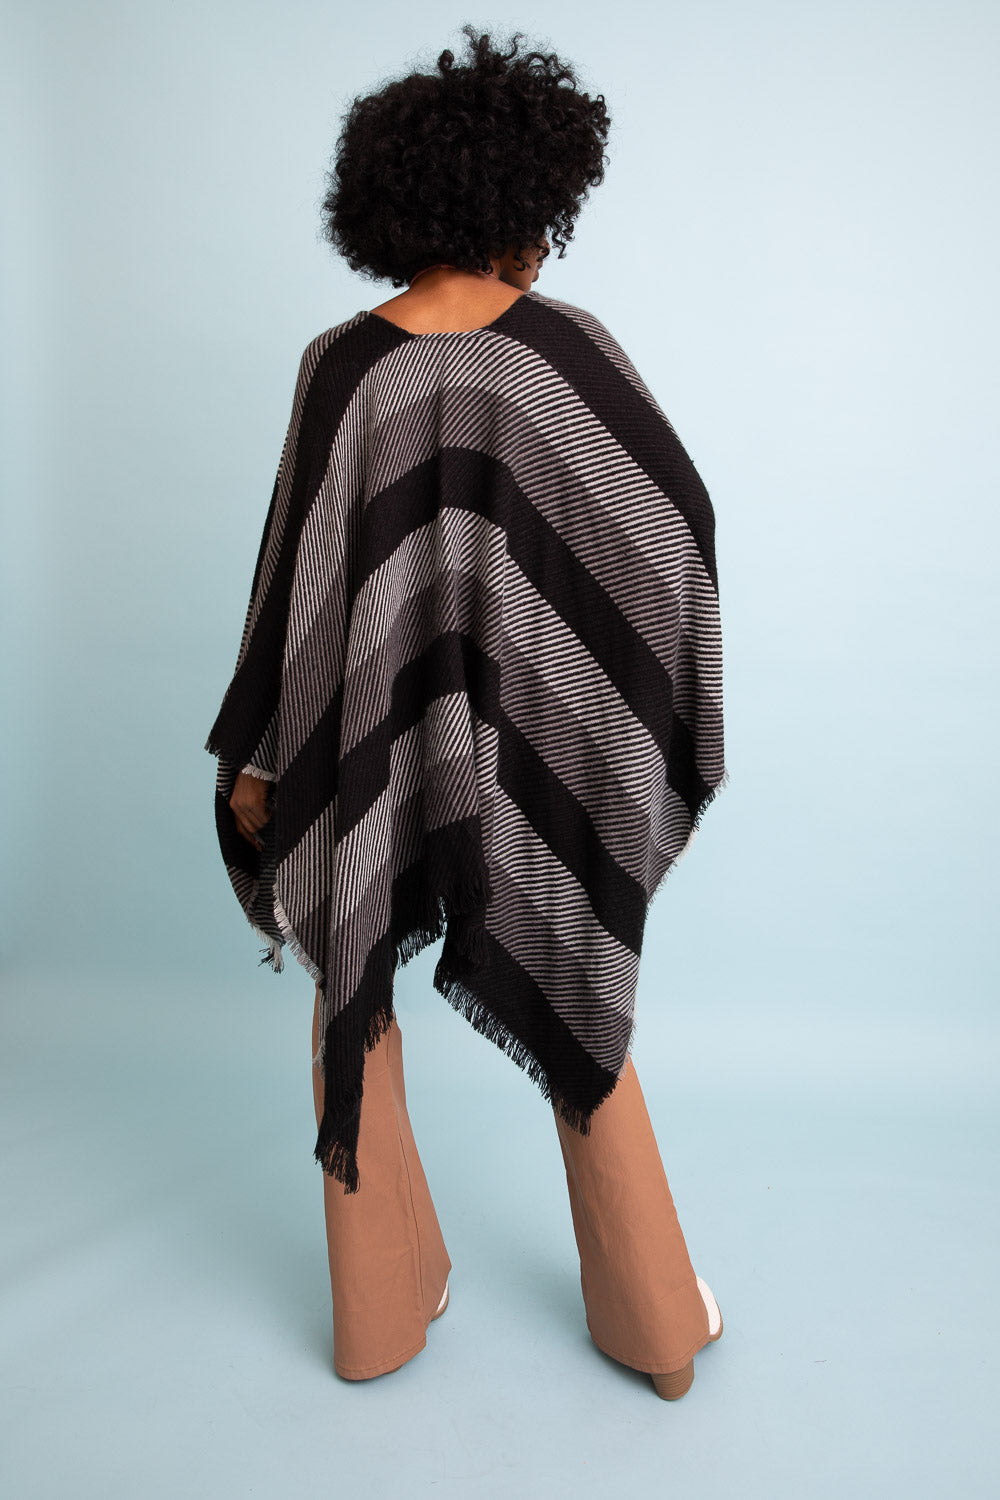 Cuddle Season Striped Knit Poncho🥰